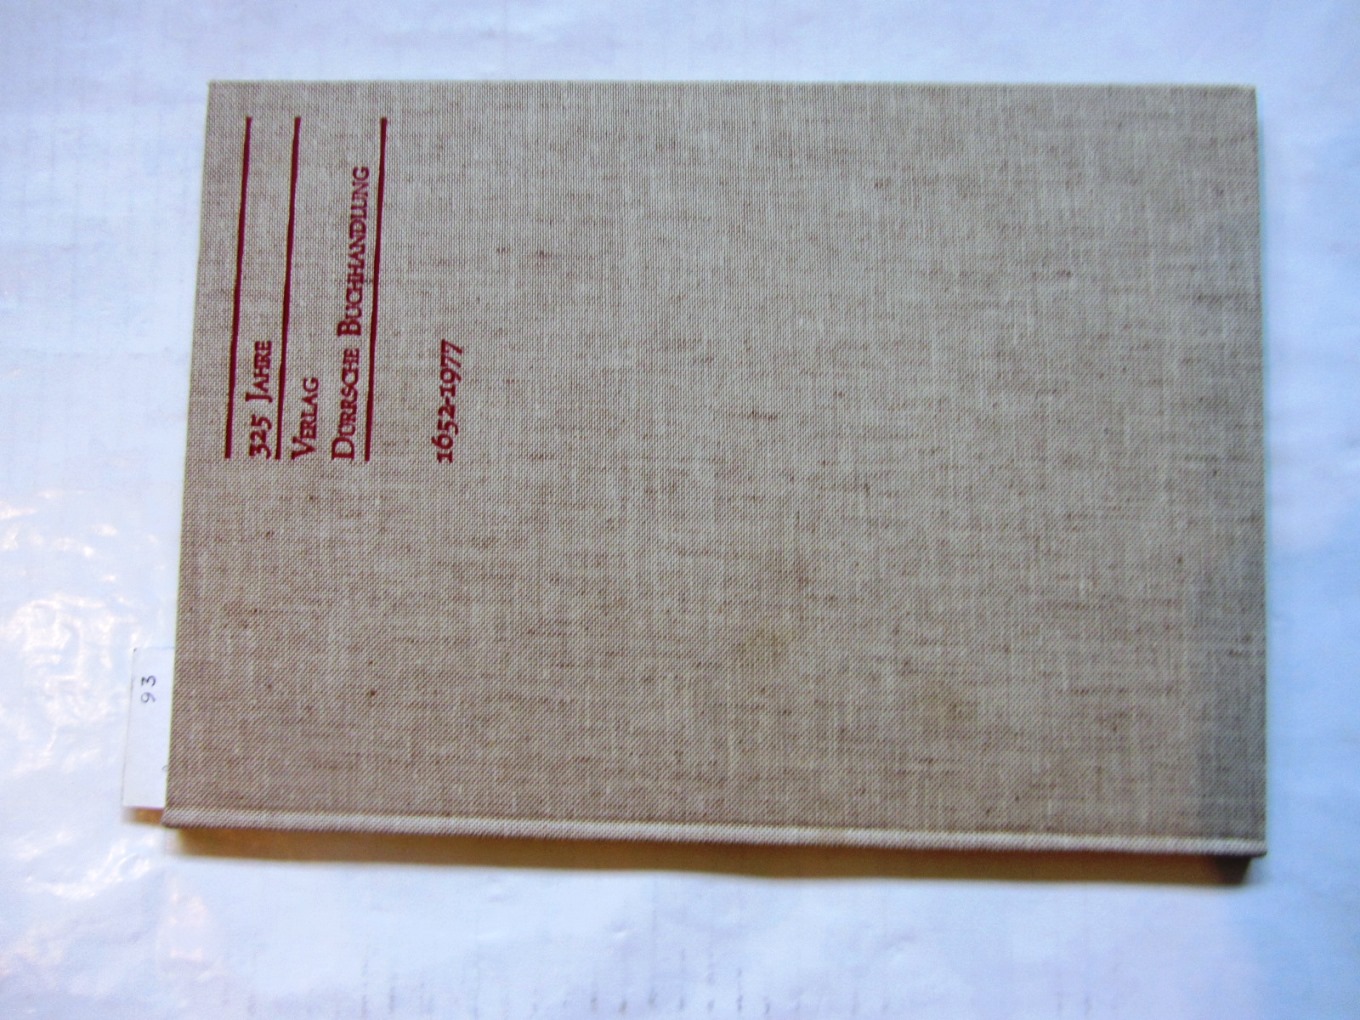   325 Jahre Verlag Dürrsche Buchhandlung 1652-1977. Hrsg. von Heinz-Walter Auster-Dürr. 